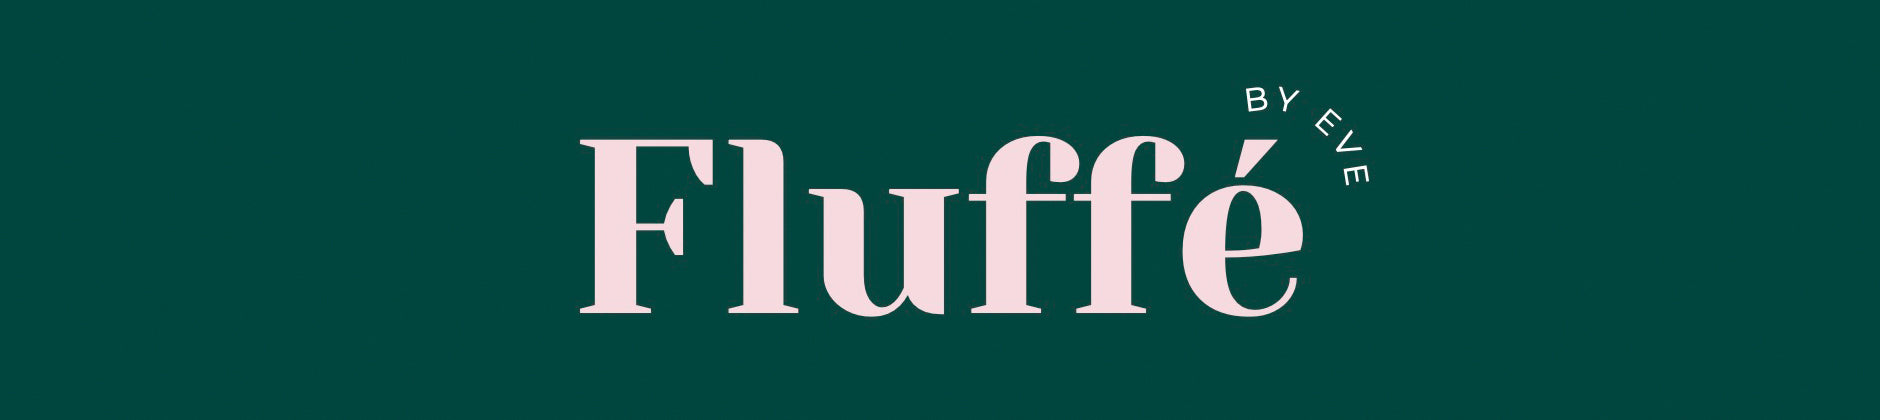 Fluffe